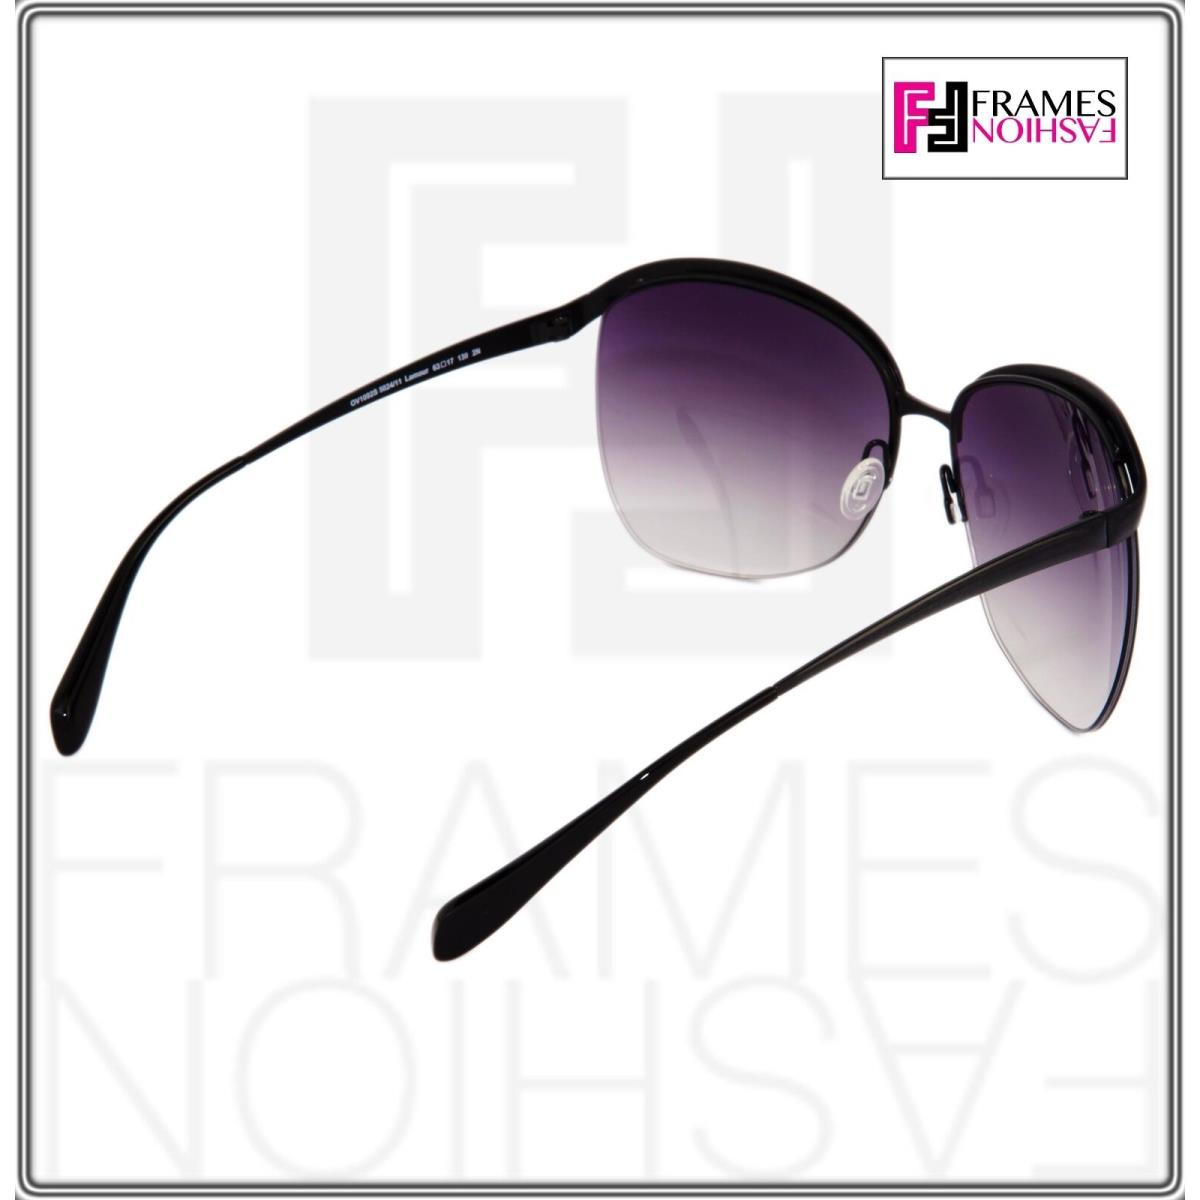 Oliver Peoples sunglasses  - Black Frame, Purple Lens 4